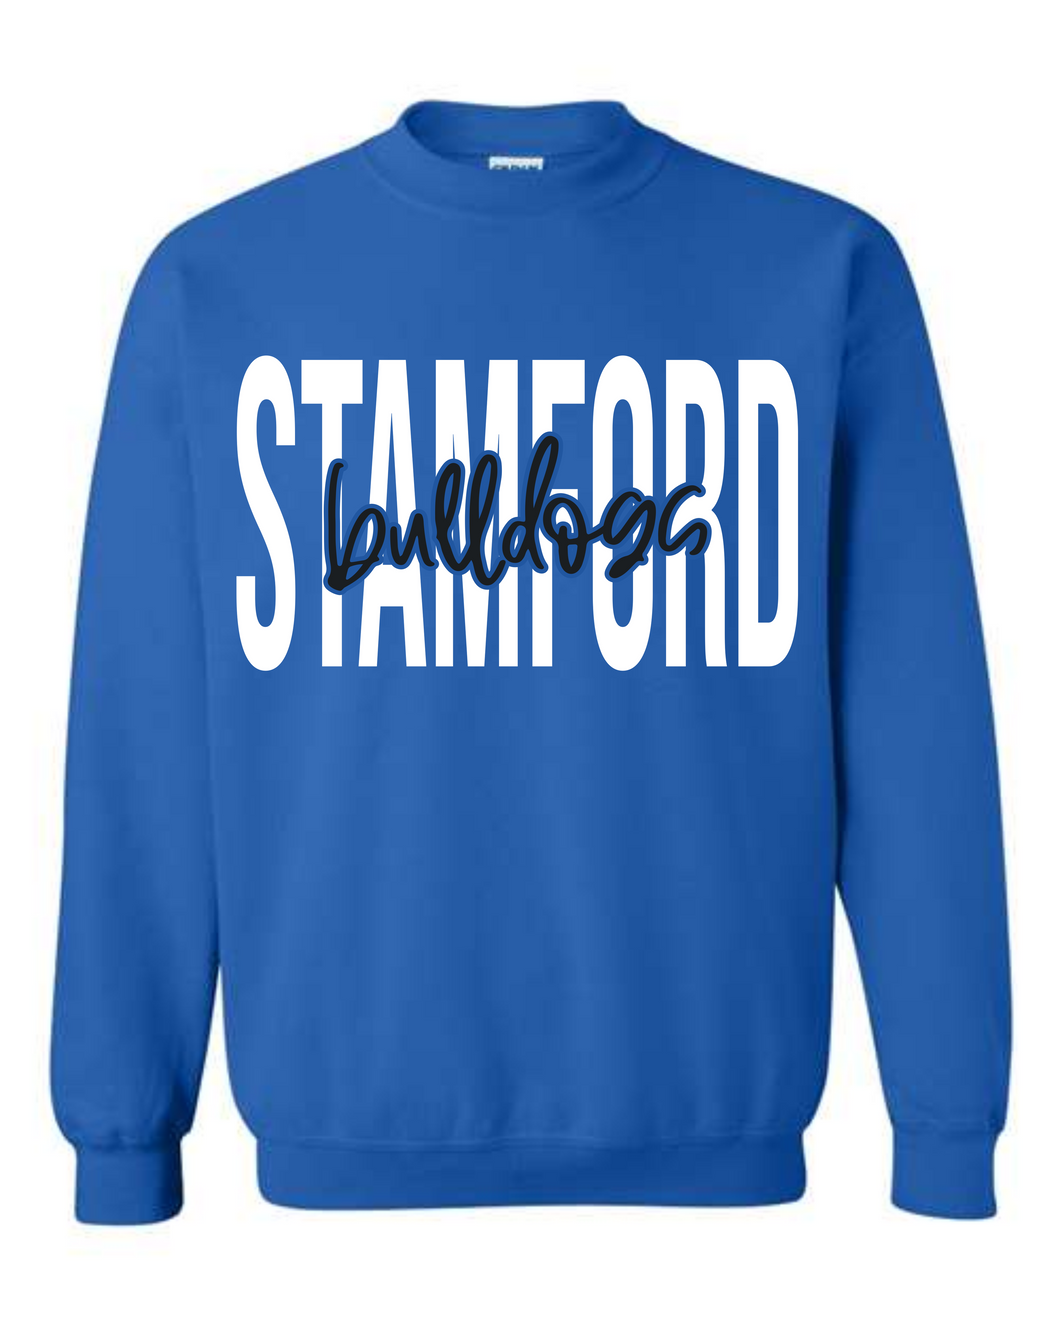 Stamford Bulldogs Puff Sweatshirt